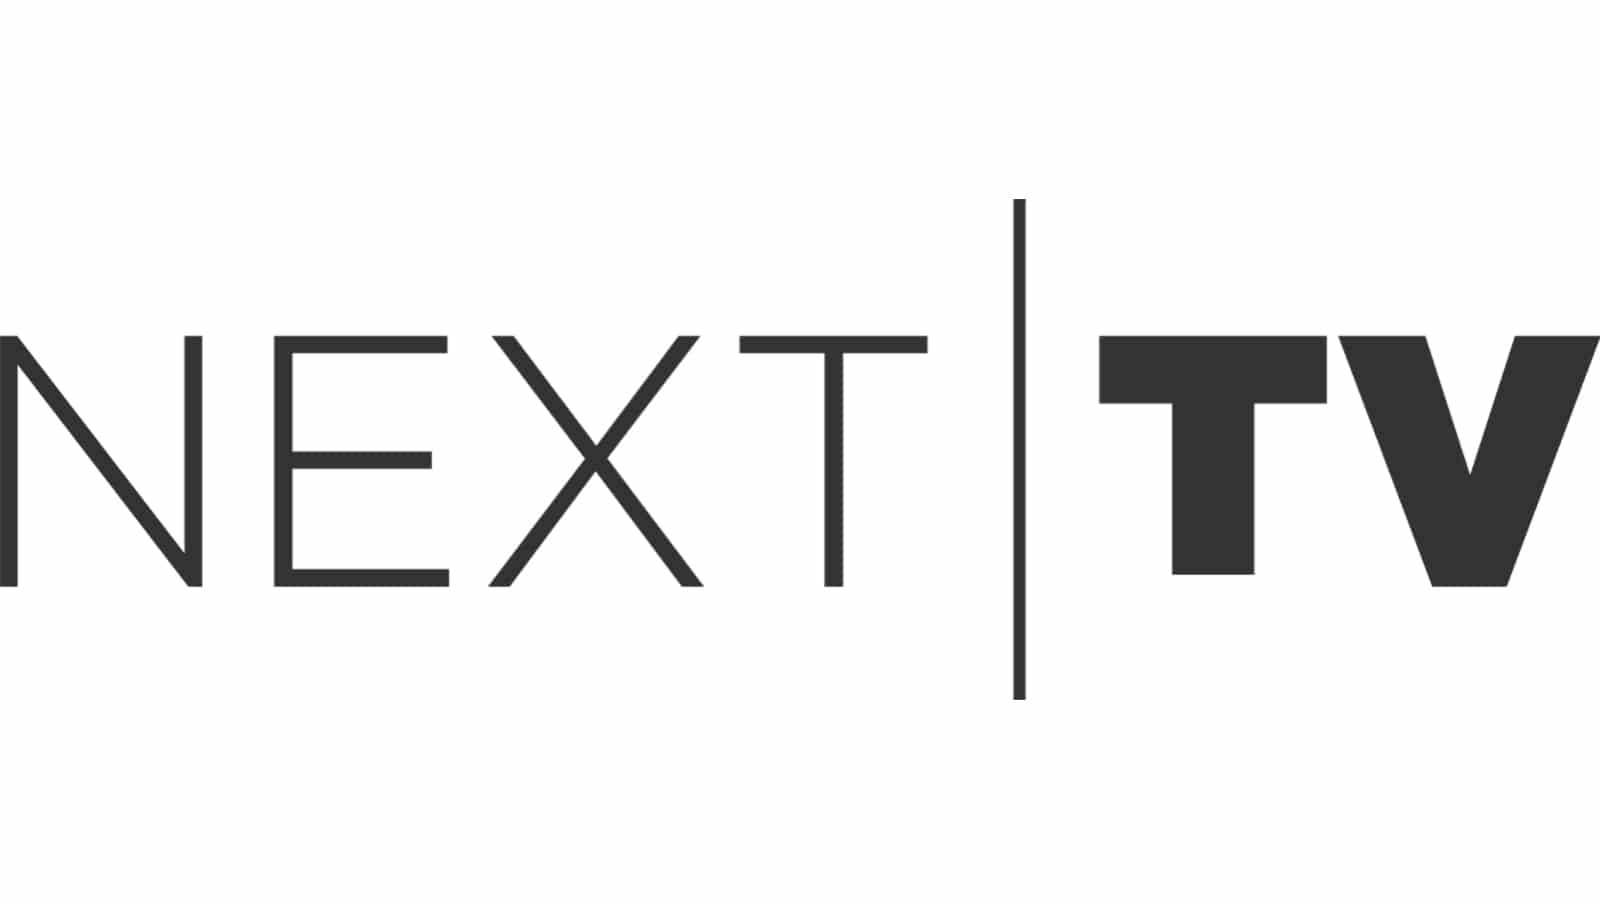 Nexttv-logo.jpg